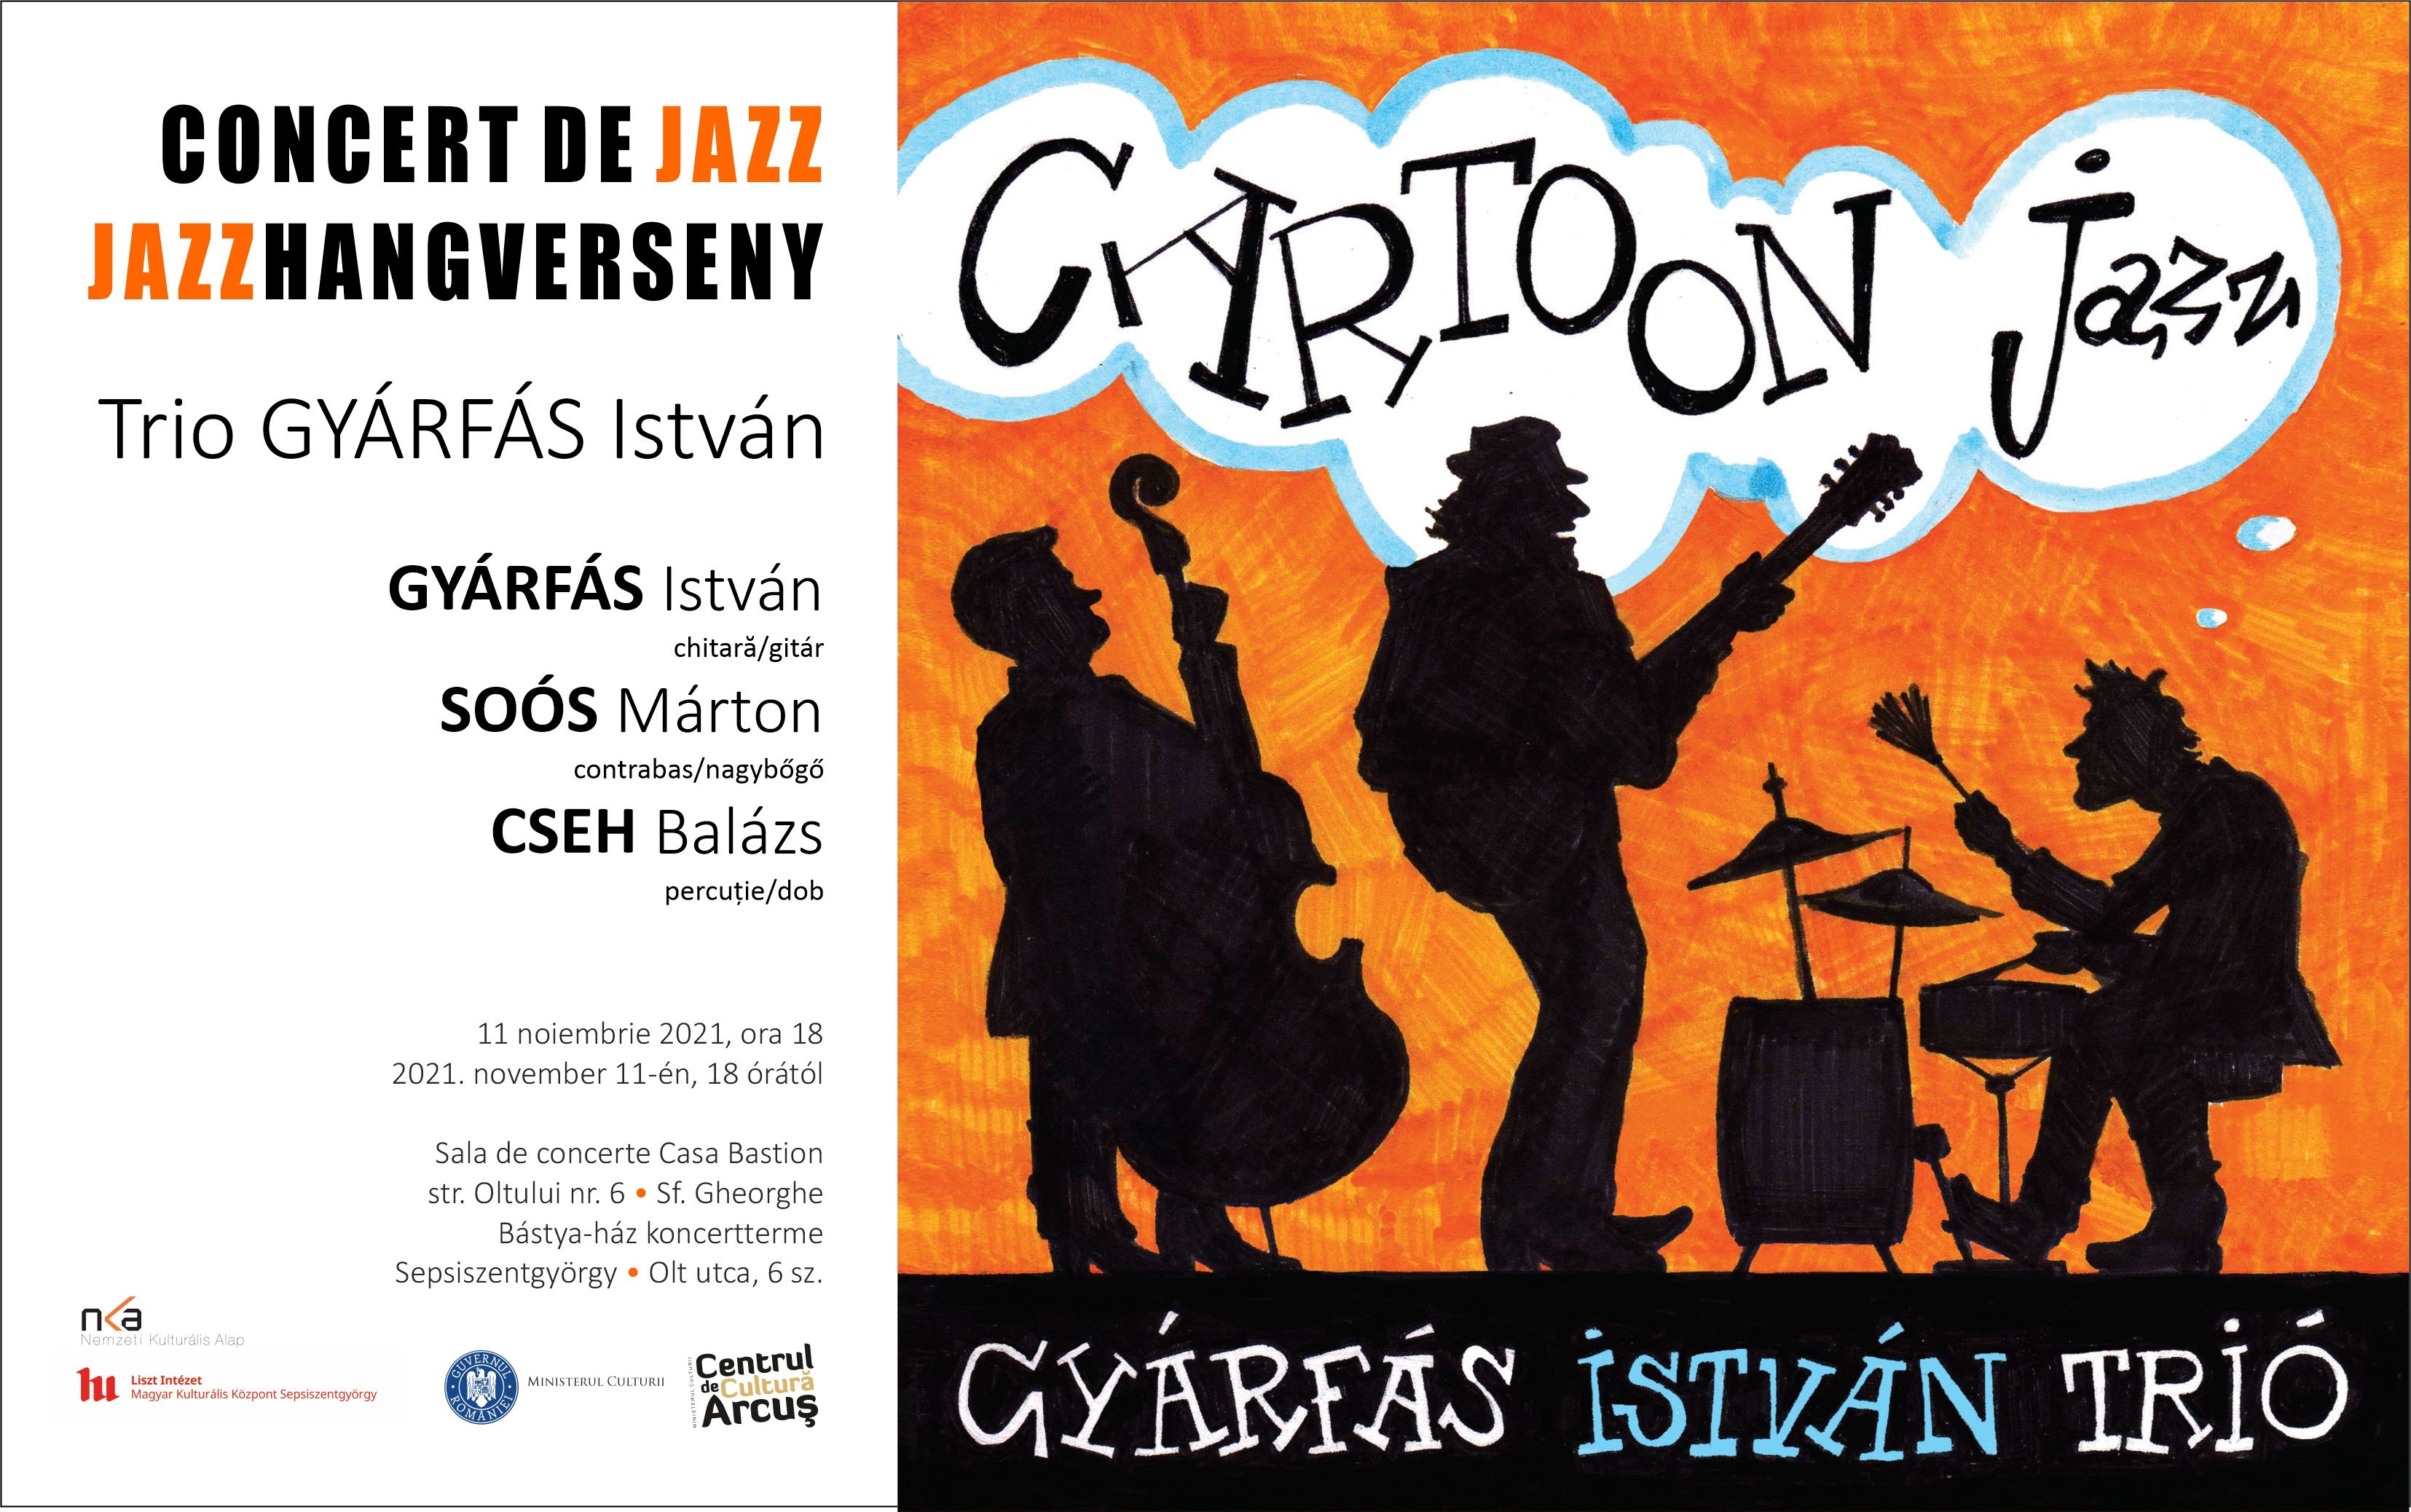 Concert de jazz - Cartoon Jazz